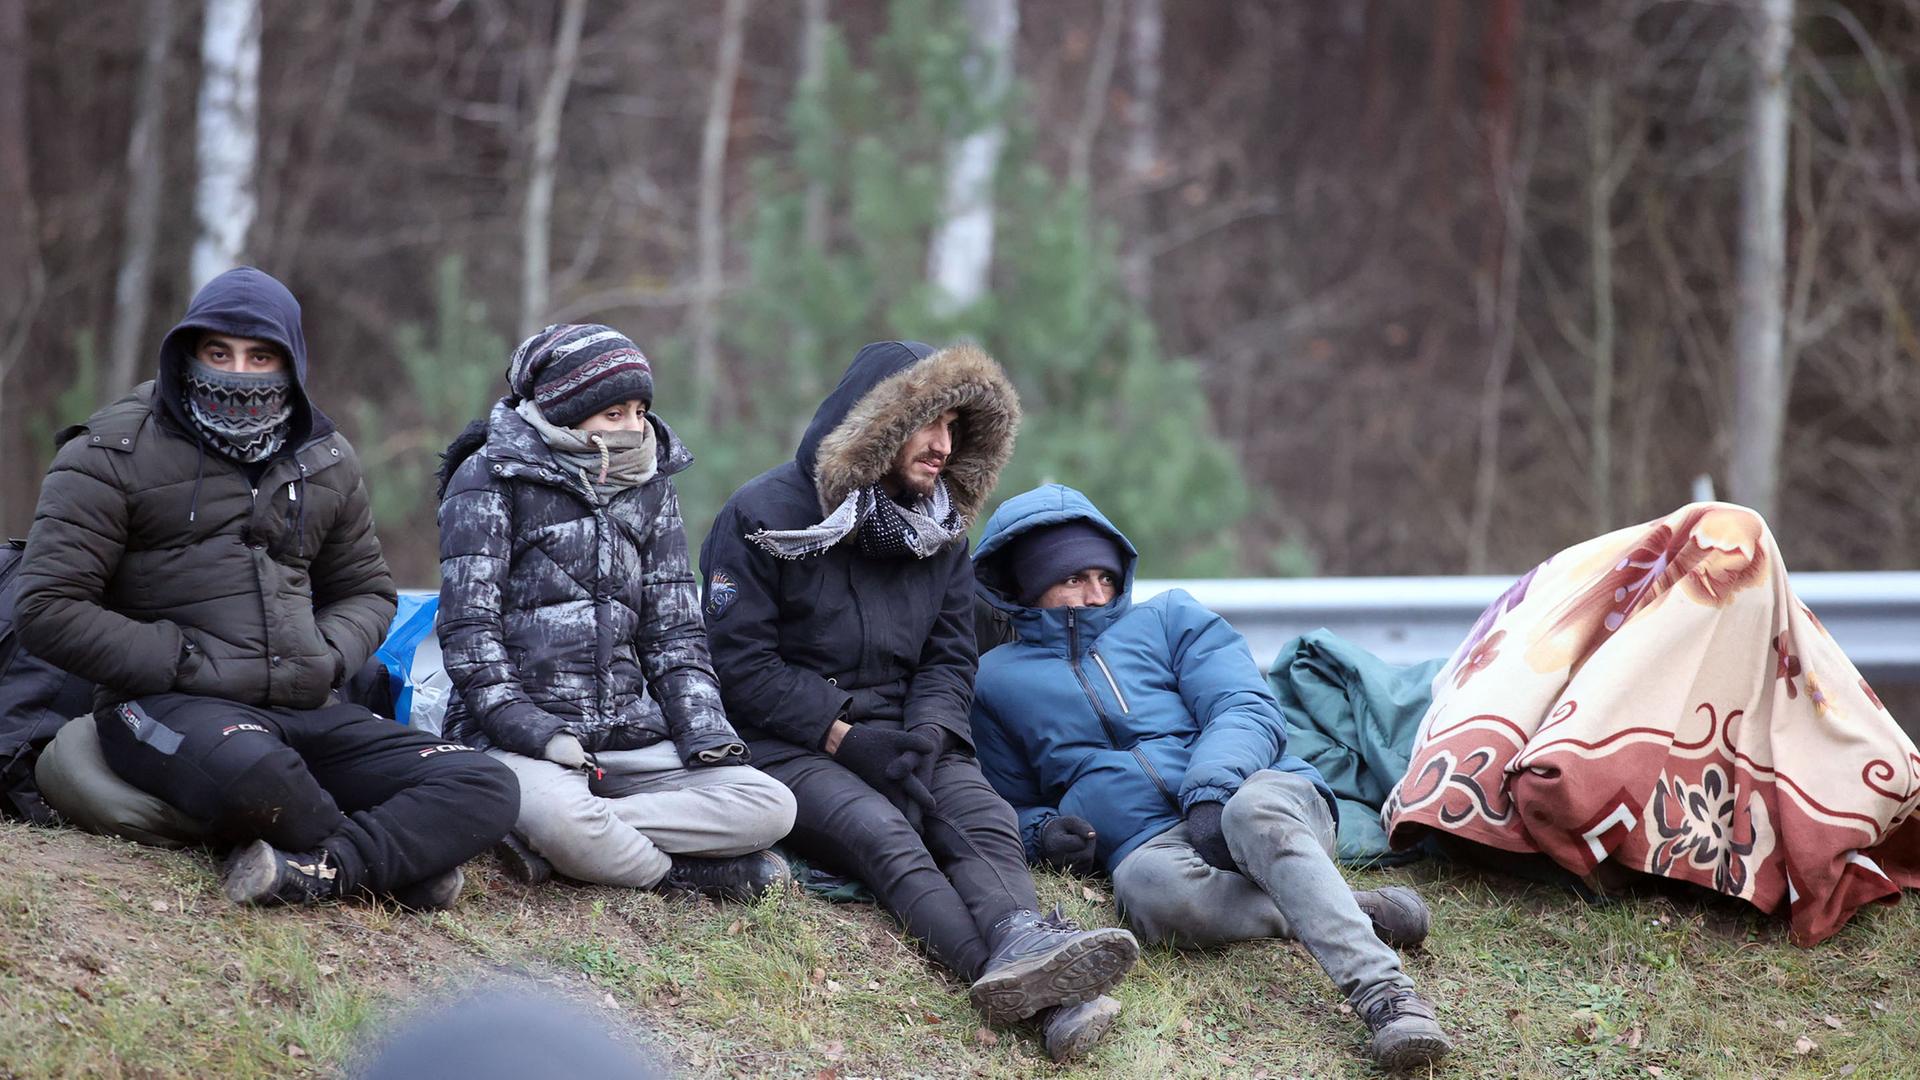 Vier Flüchtlinge, alle in dicke Winterjacken gehüllt, sitzen draußen auf dem Boden, hinter ihnen befinden sich Bäume. 